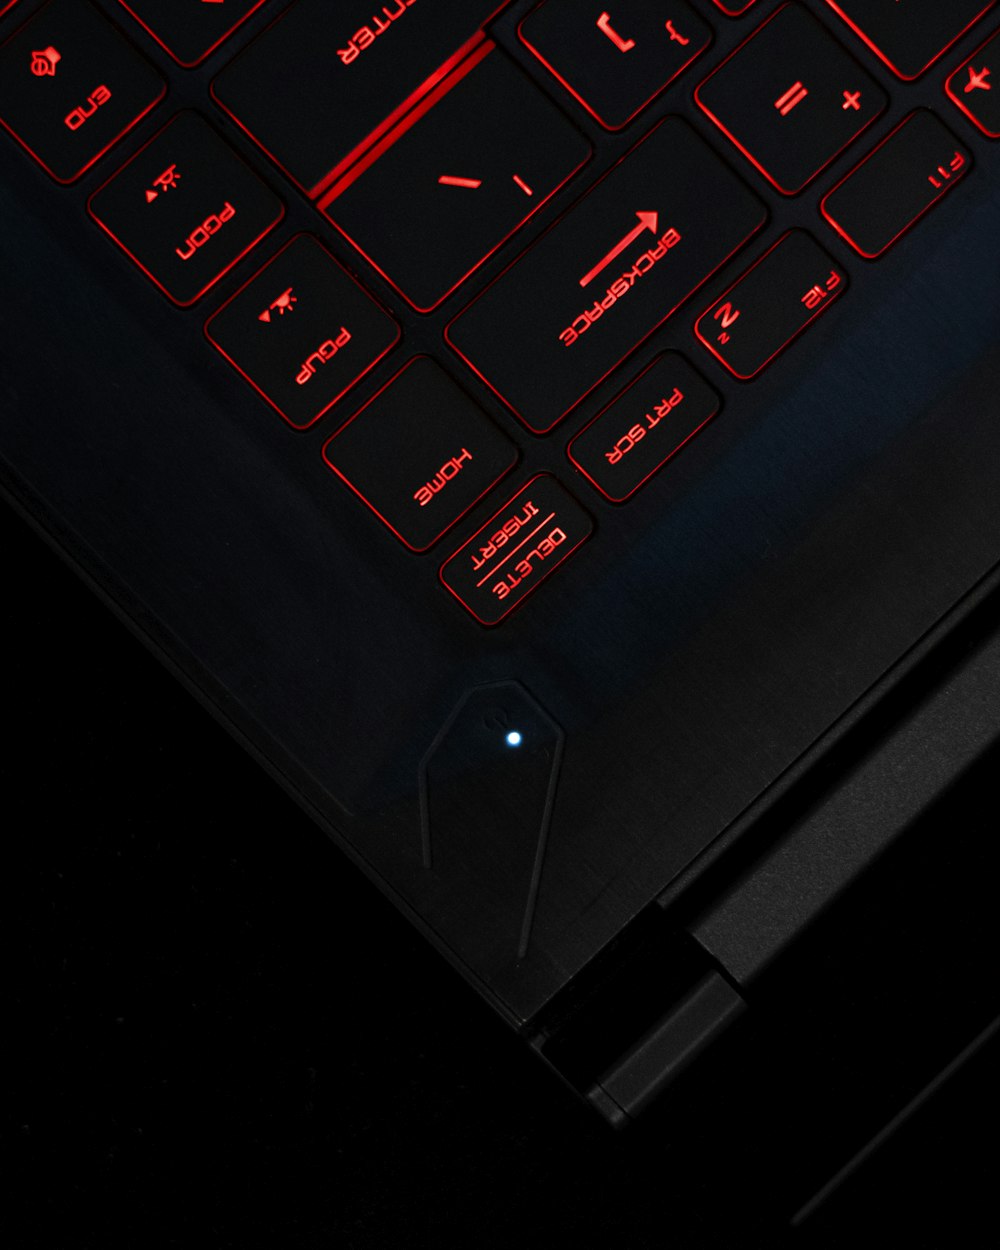 Schwarzer Laptop-Computer mit eingeschalteter Tastatur